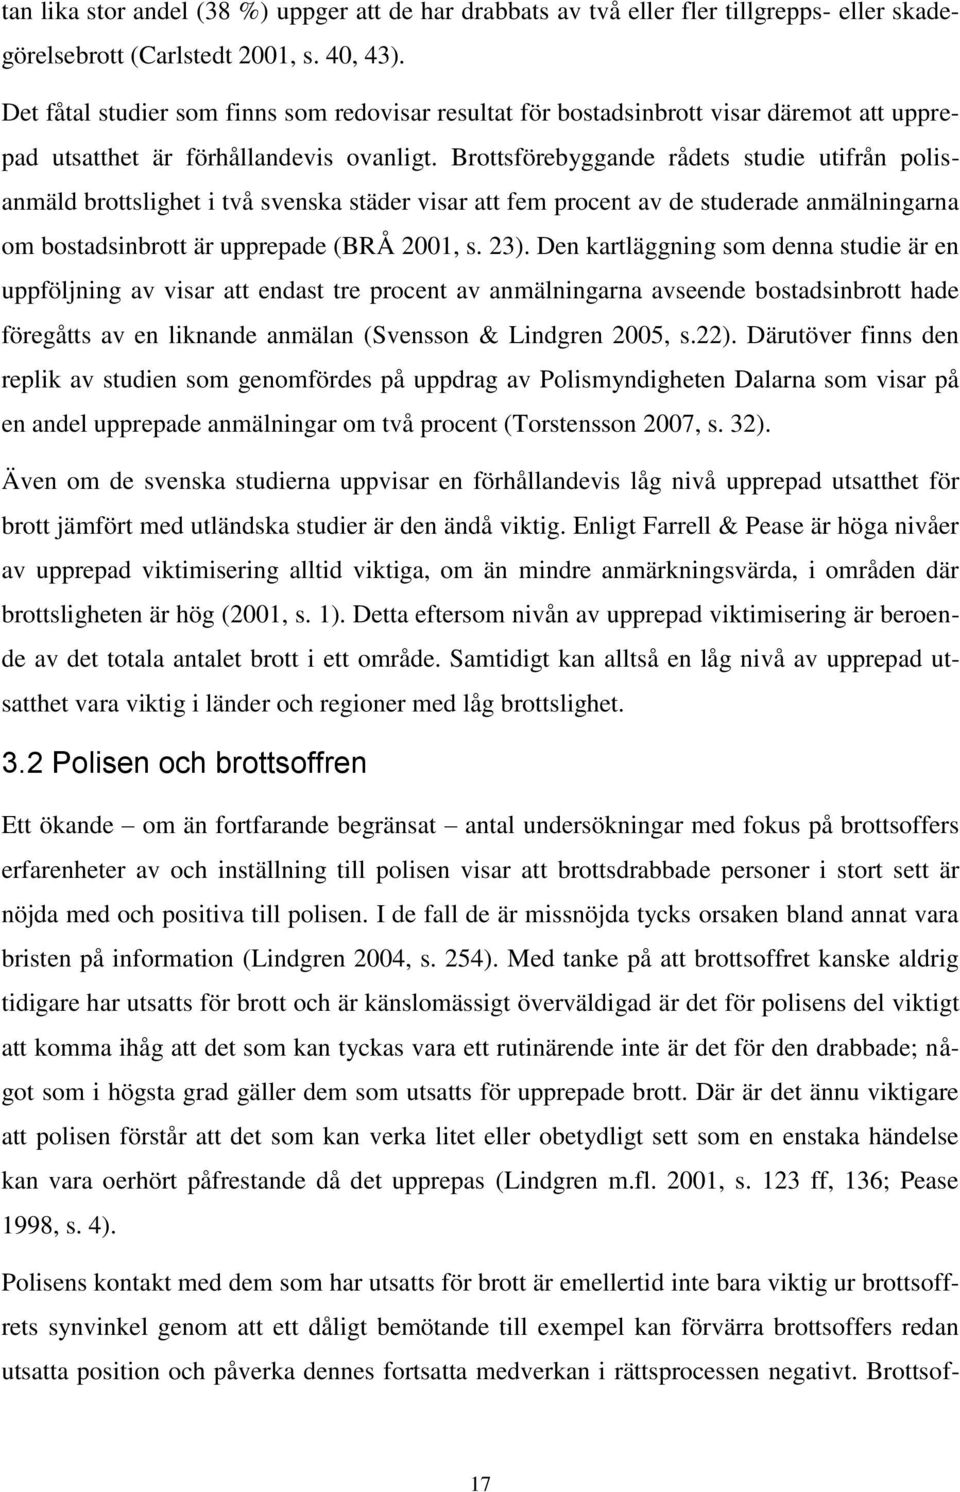 Brottsförebyggande rådets studie utifrån polisanmäld brottslighet i två svenska städer visar att fem procent av de studerade anmälningarna om bostadsinbrott är upprepade (BRÅ 2001, s. 23).